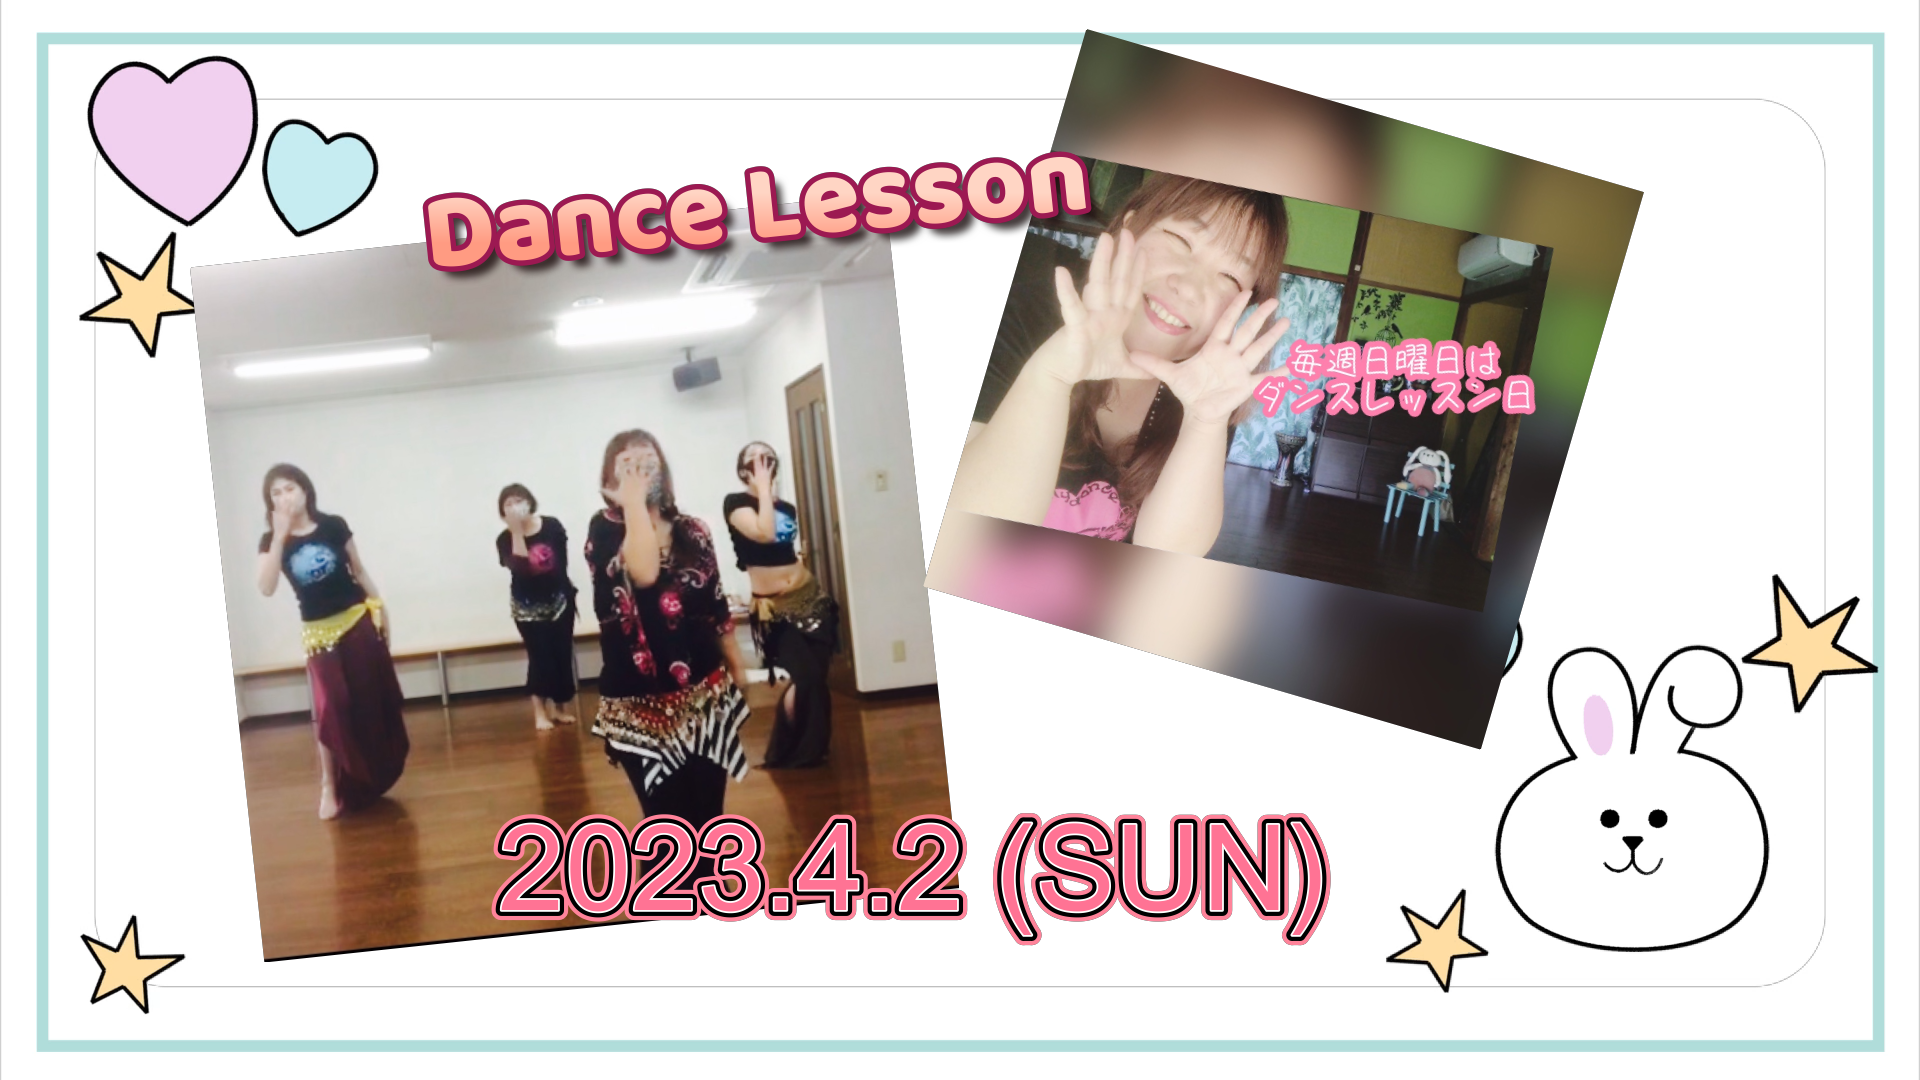 【ダンスレッスン記録】2023.4.2 (SUN)